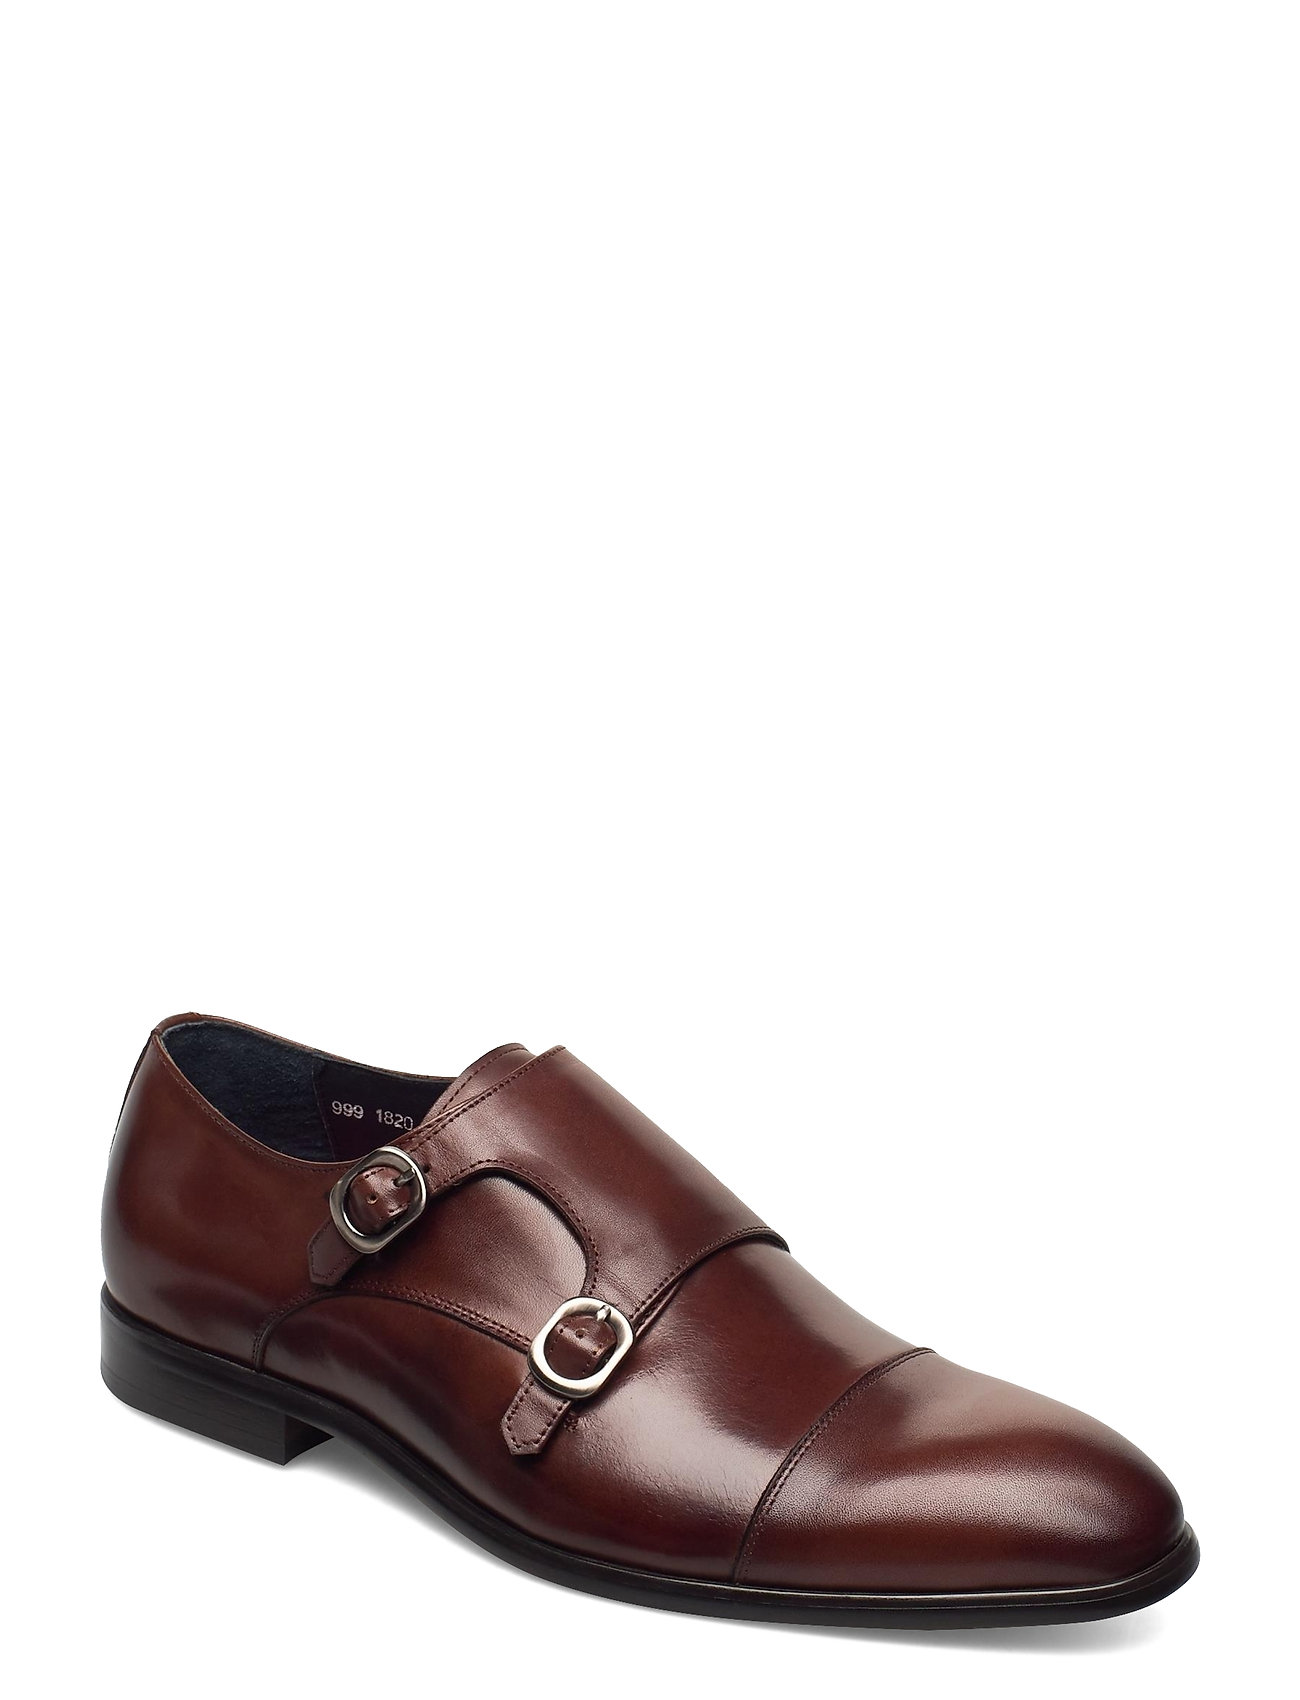 TGA by Ahler Double Monk Strap Shoe (Cognac), 675 kr | Stort af designer mærker | Booztlet.com